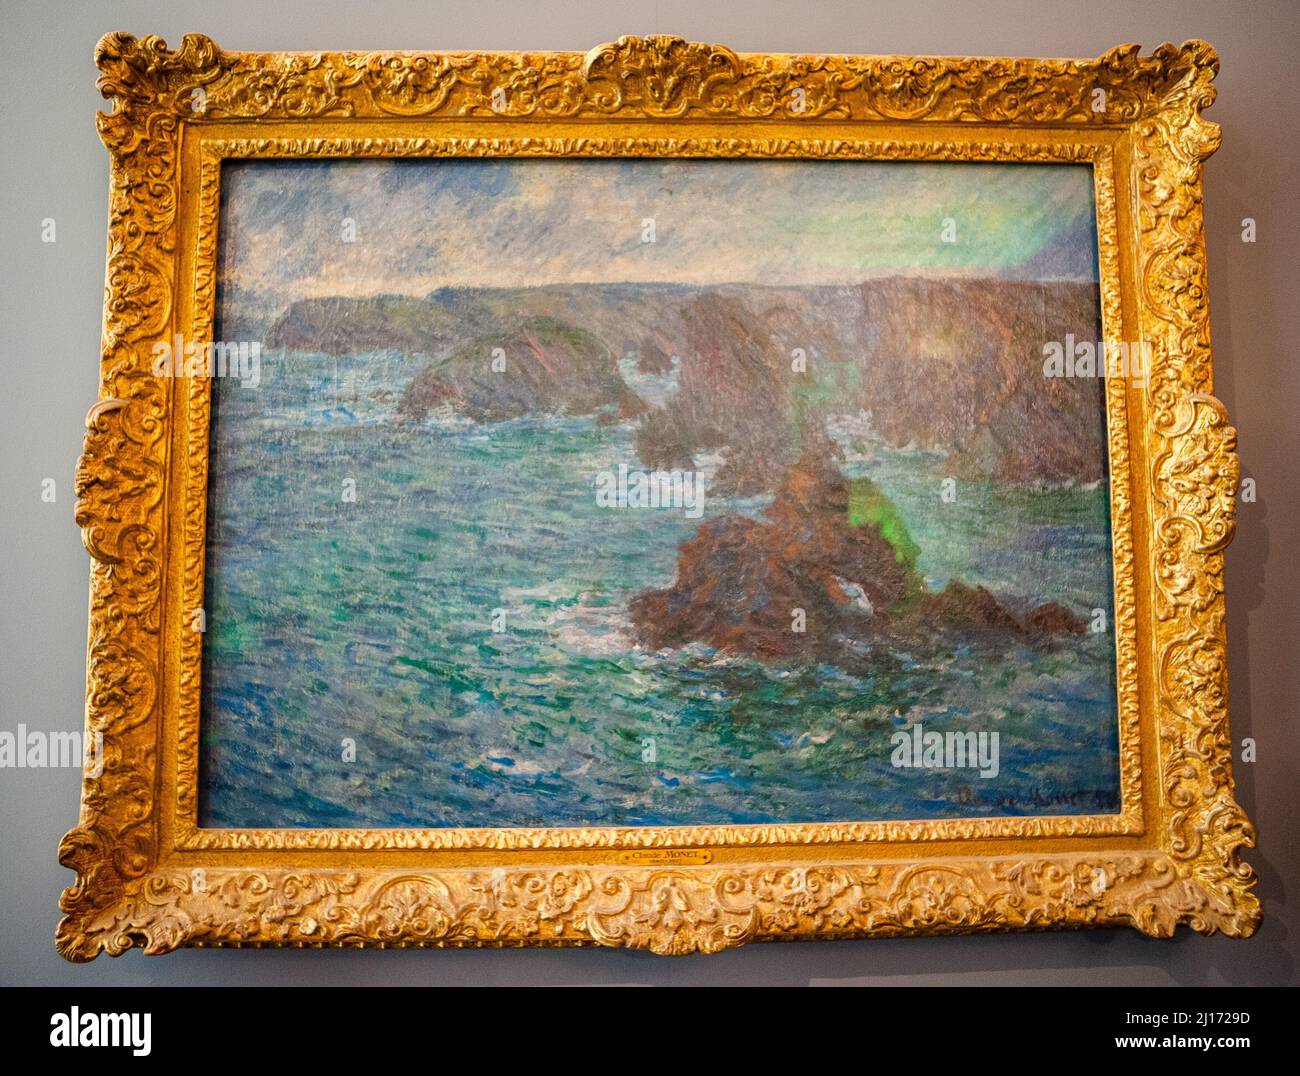 Paris, Frankreich, innen, Nahaufnahme, Rodin Museum, Gemälde von Claude Monet, musee rodin paris, Seascape, Impressionisten Gemälde Stockfoto